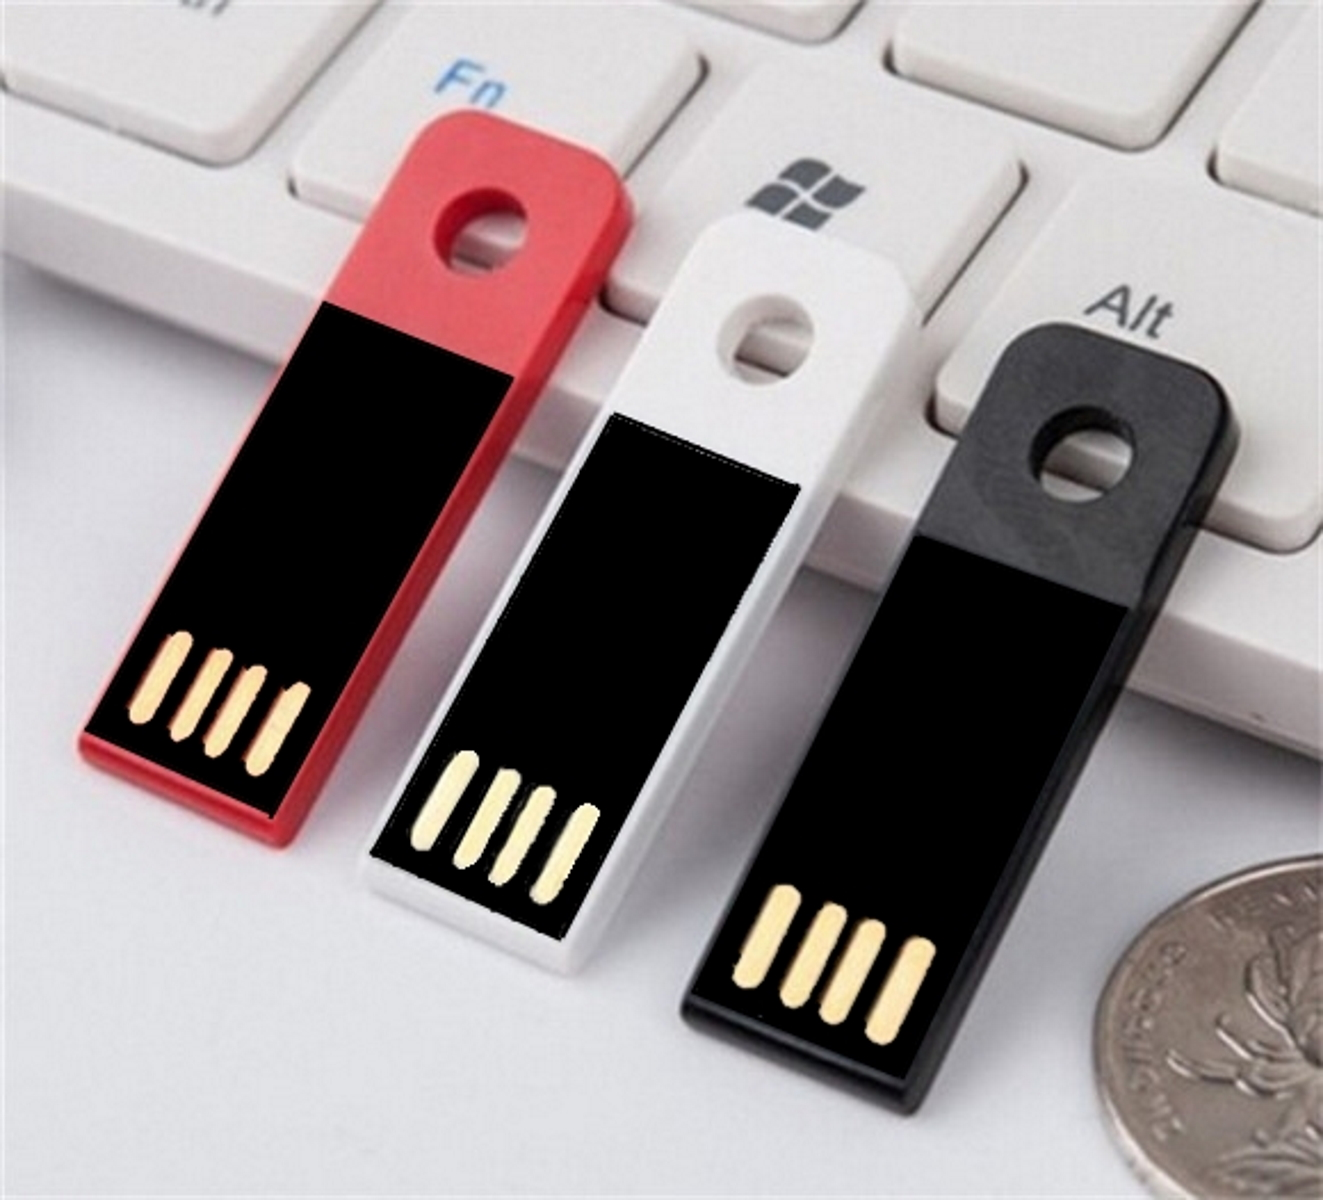 USB GERMANY Mini USB-Stick 2 Slim GB) ® (Weiß